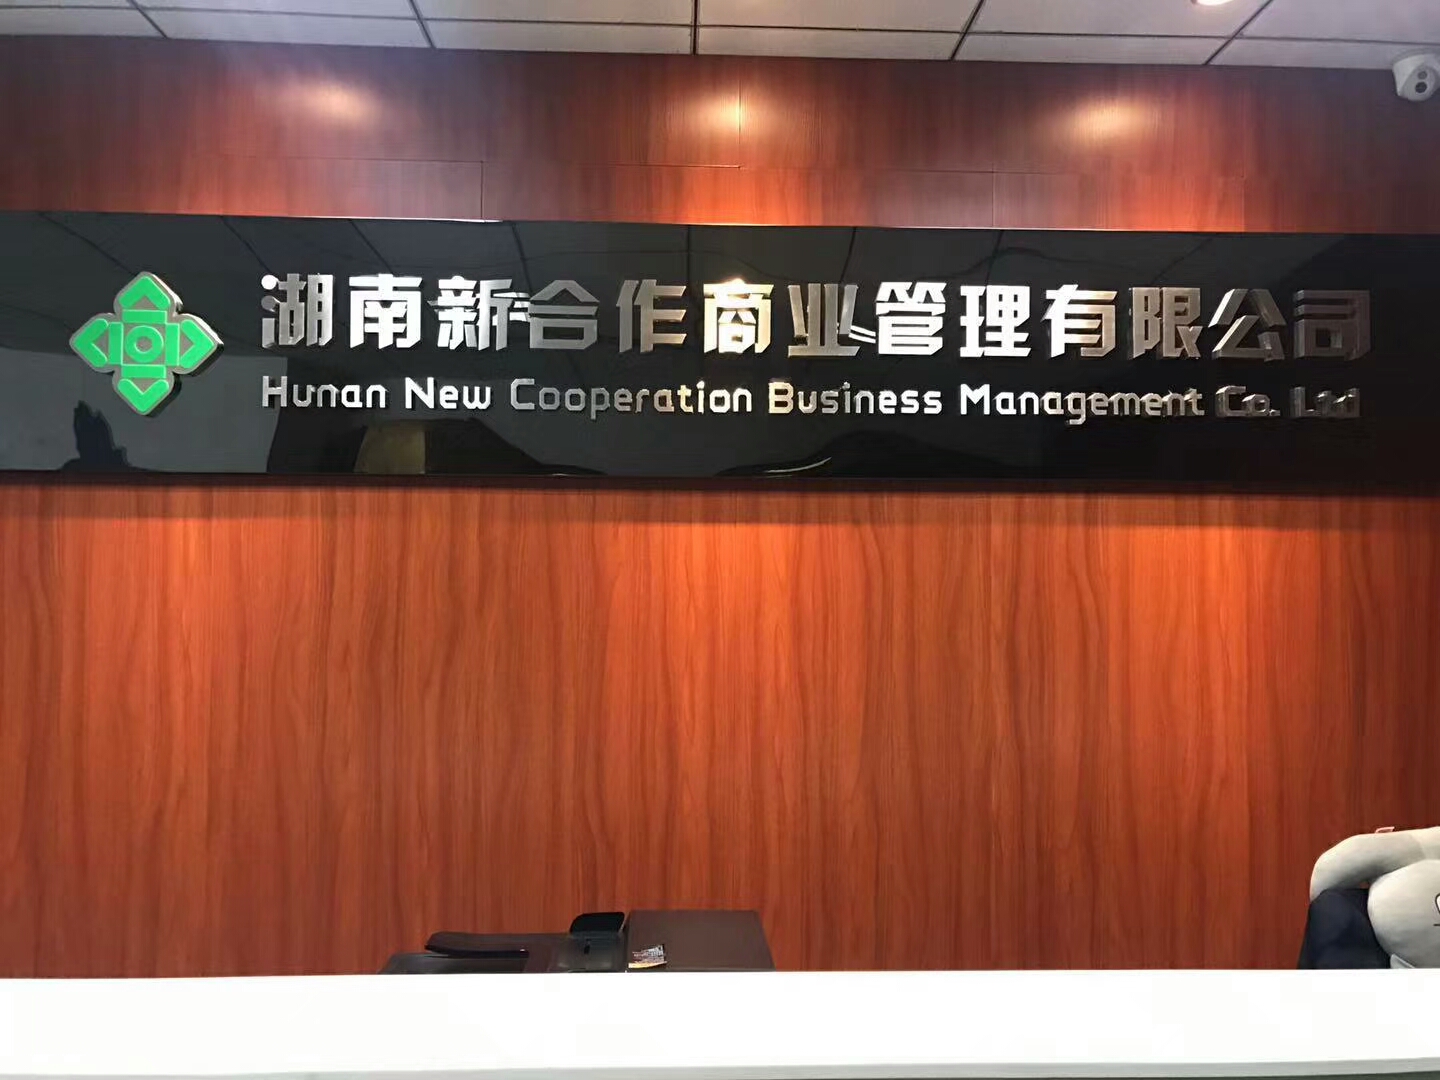 湖南新合作商業管理有限公司室內空氣治理